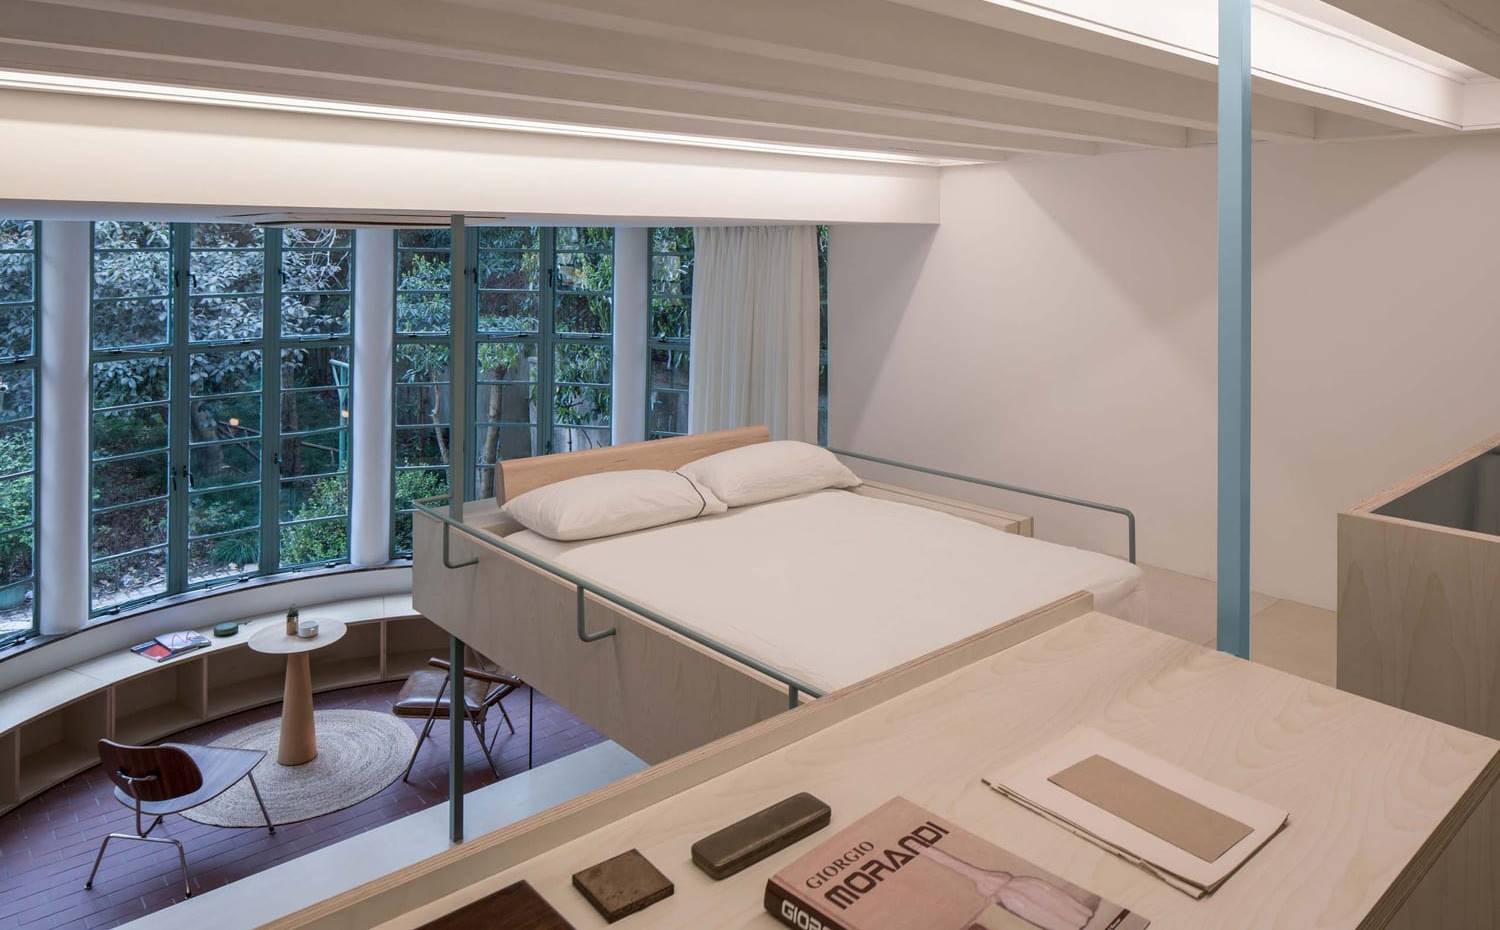 Cama suspendida sobre hueco salón. Para este proyecto, el estudio Atelier tao + c situa la cama en una posición que parece levitar sobre el resto de la vivienda.